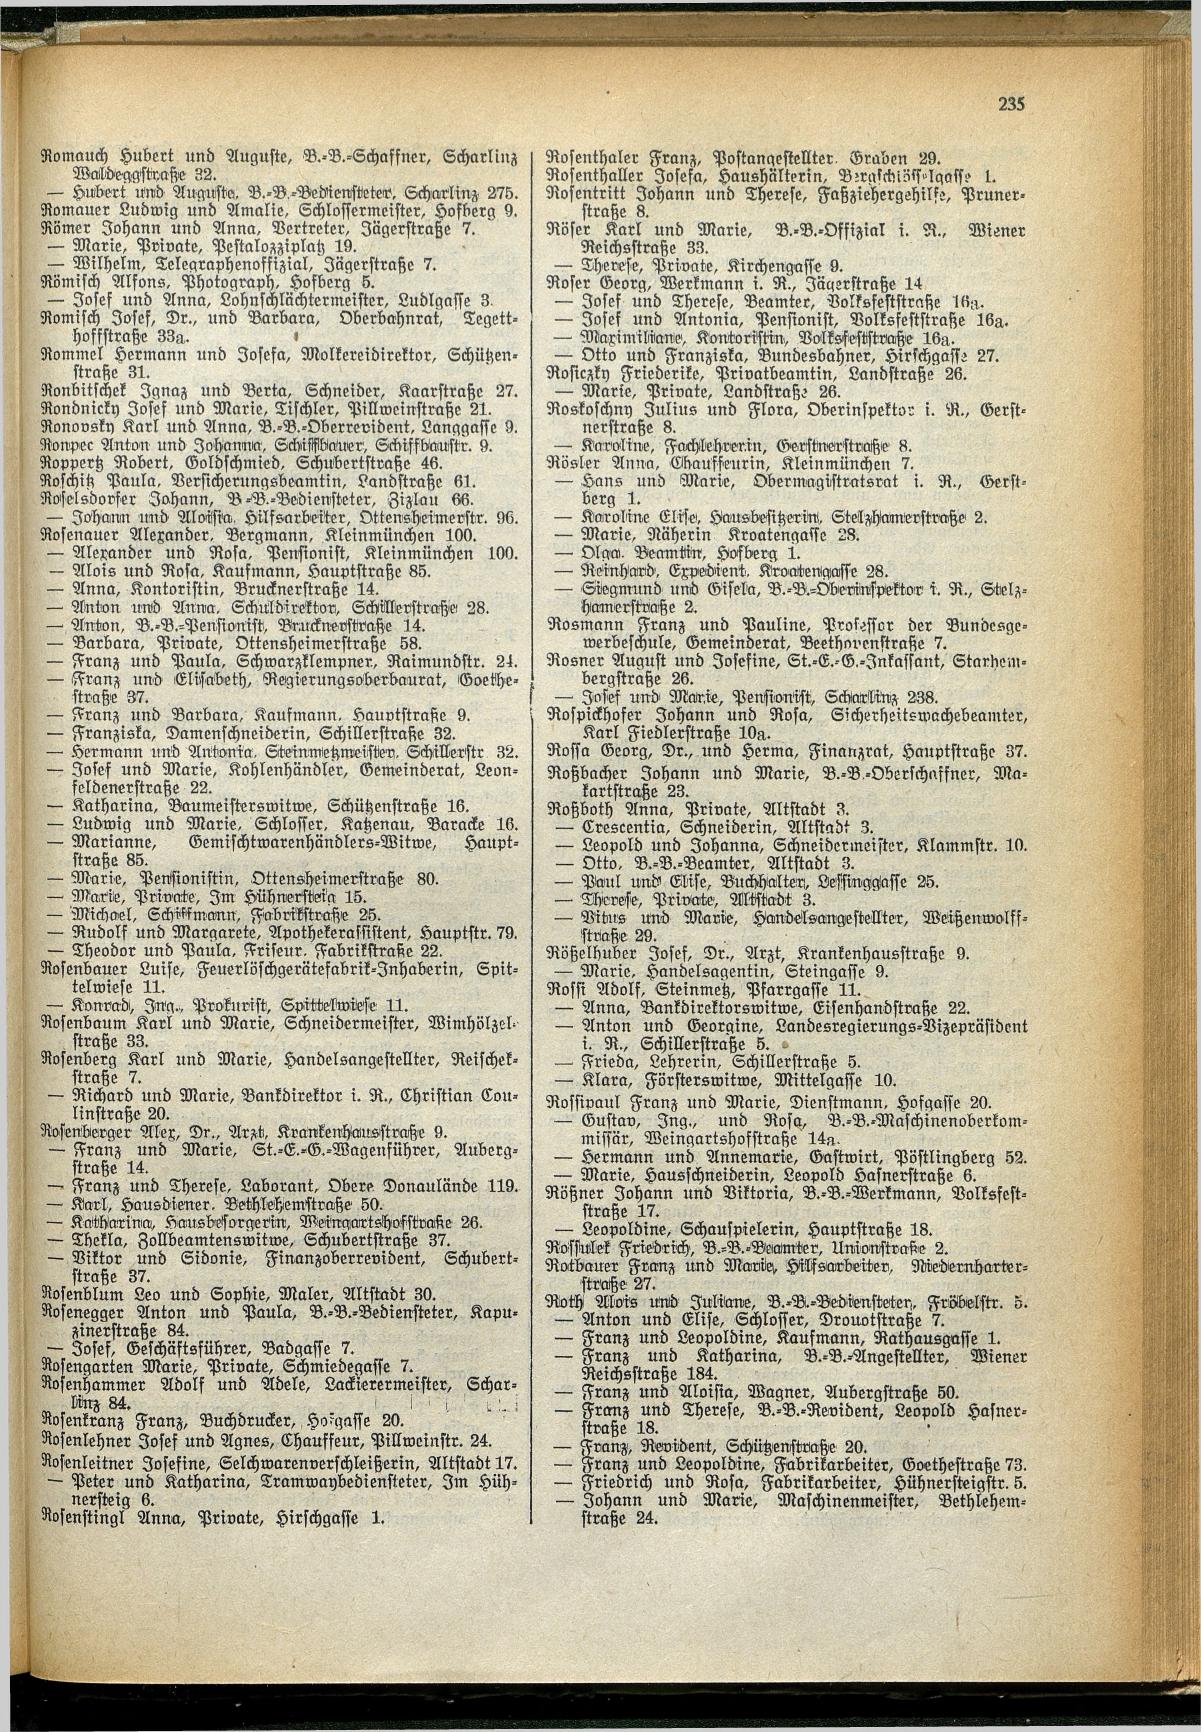 Amtliches Linzer Adreßbuch 1929 - Seite 259